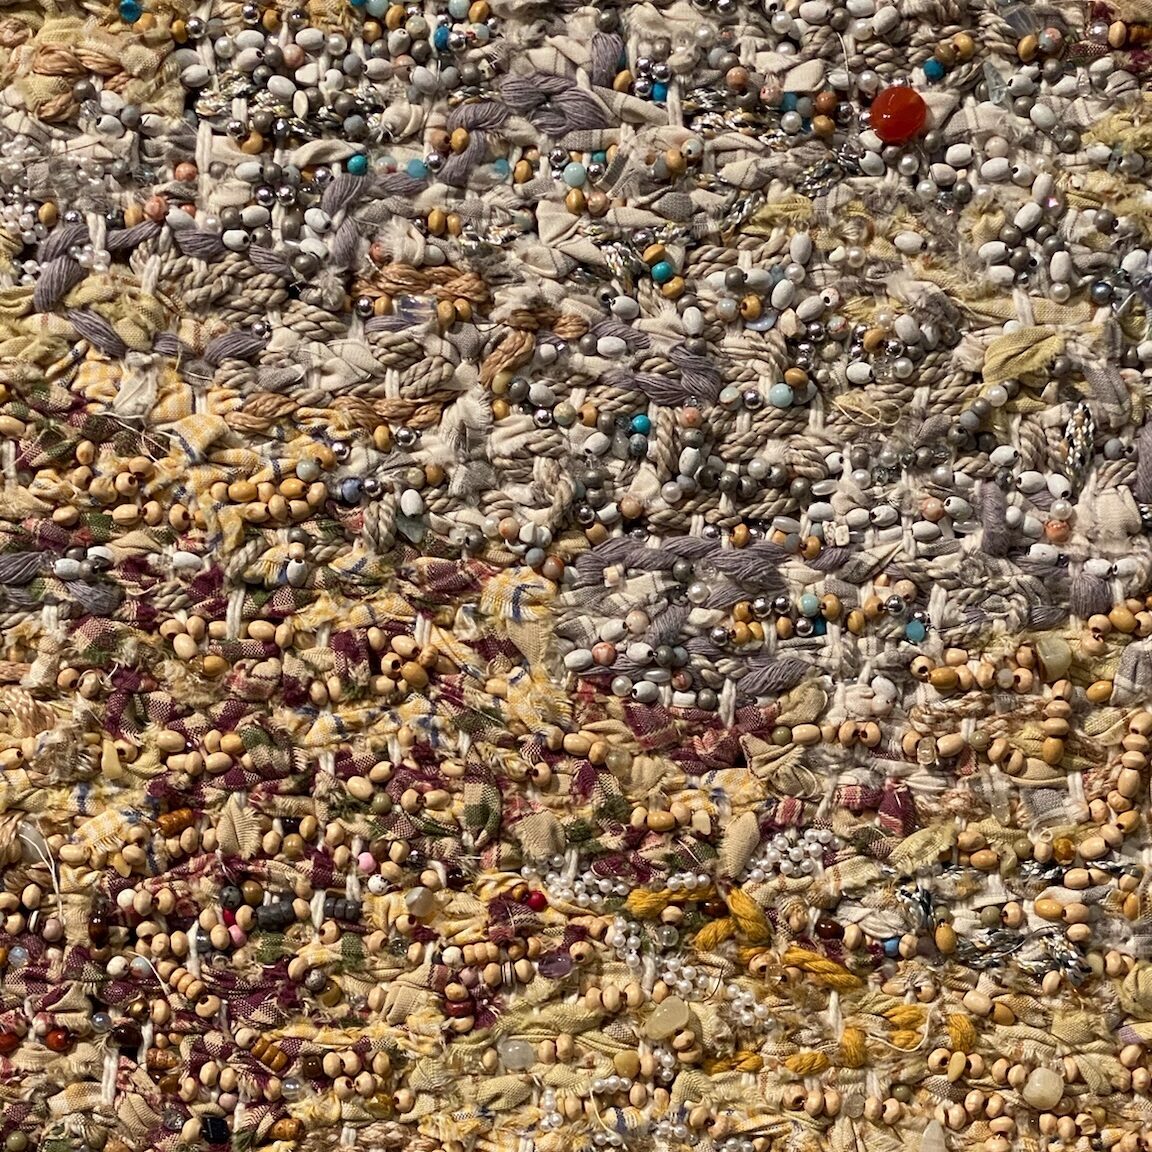 perlen, nylon, Muscheln, perlen verwebt zu einem riesigen Wandteppich von igshaan Adams auf der biennale in venedig im arsenale